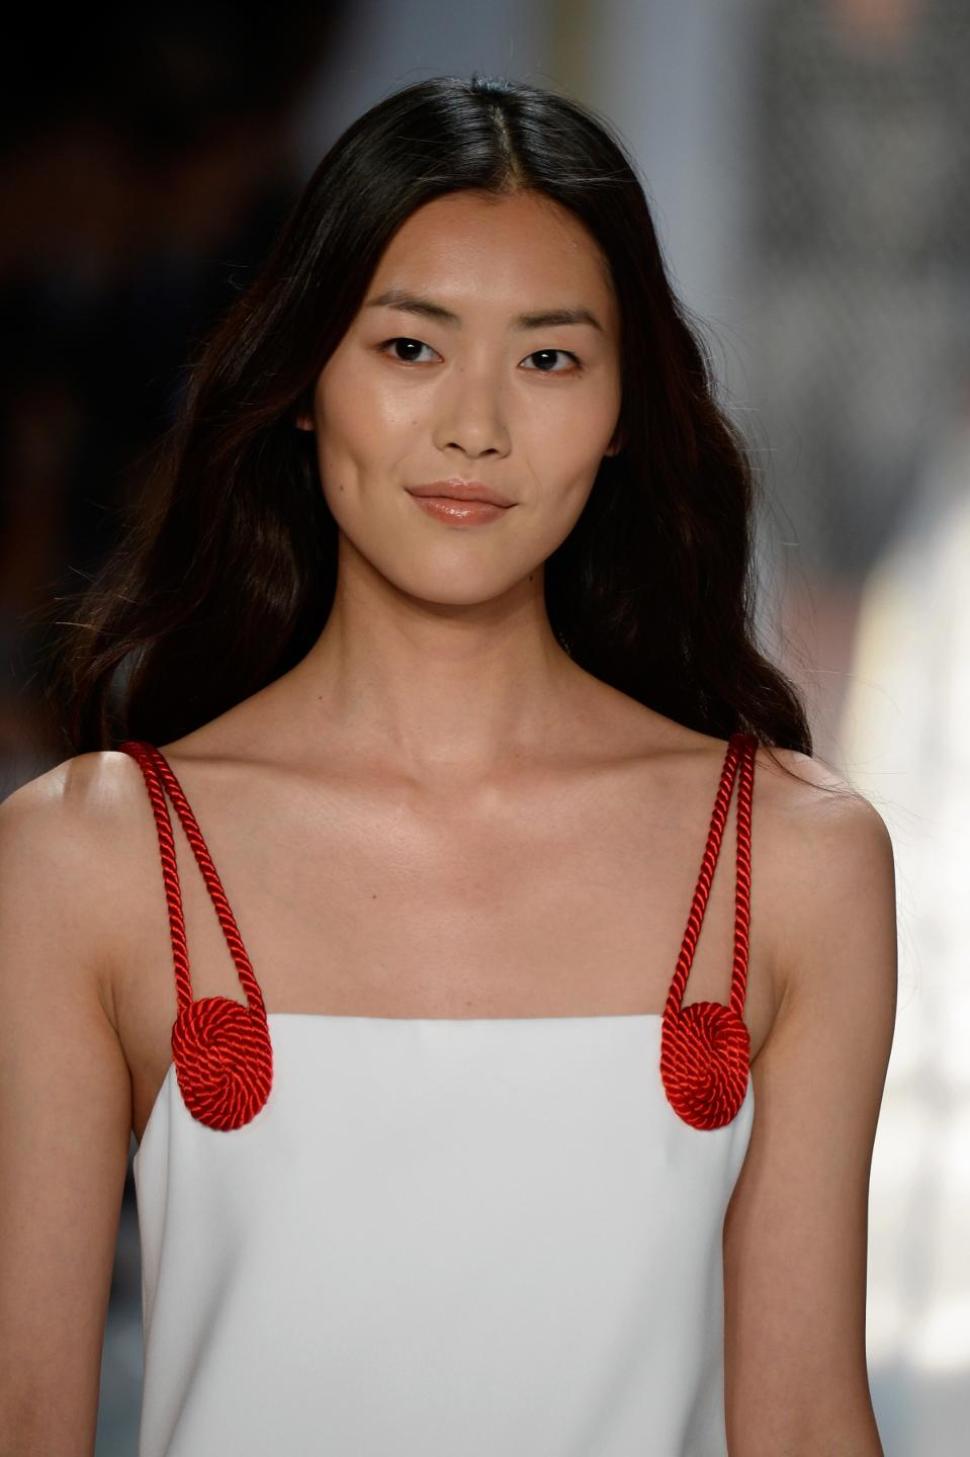 Model Liu Wen earned $    7 million in 2014.